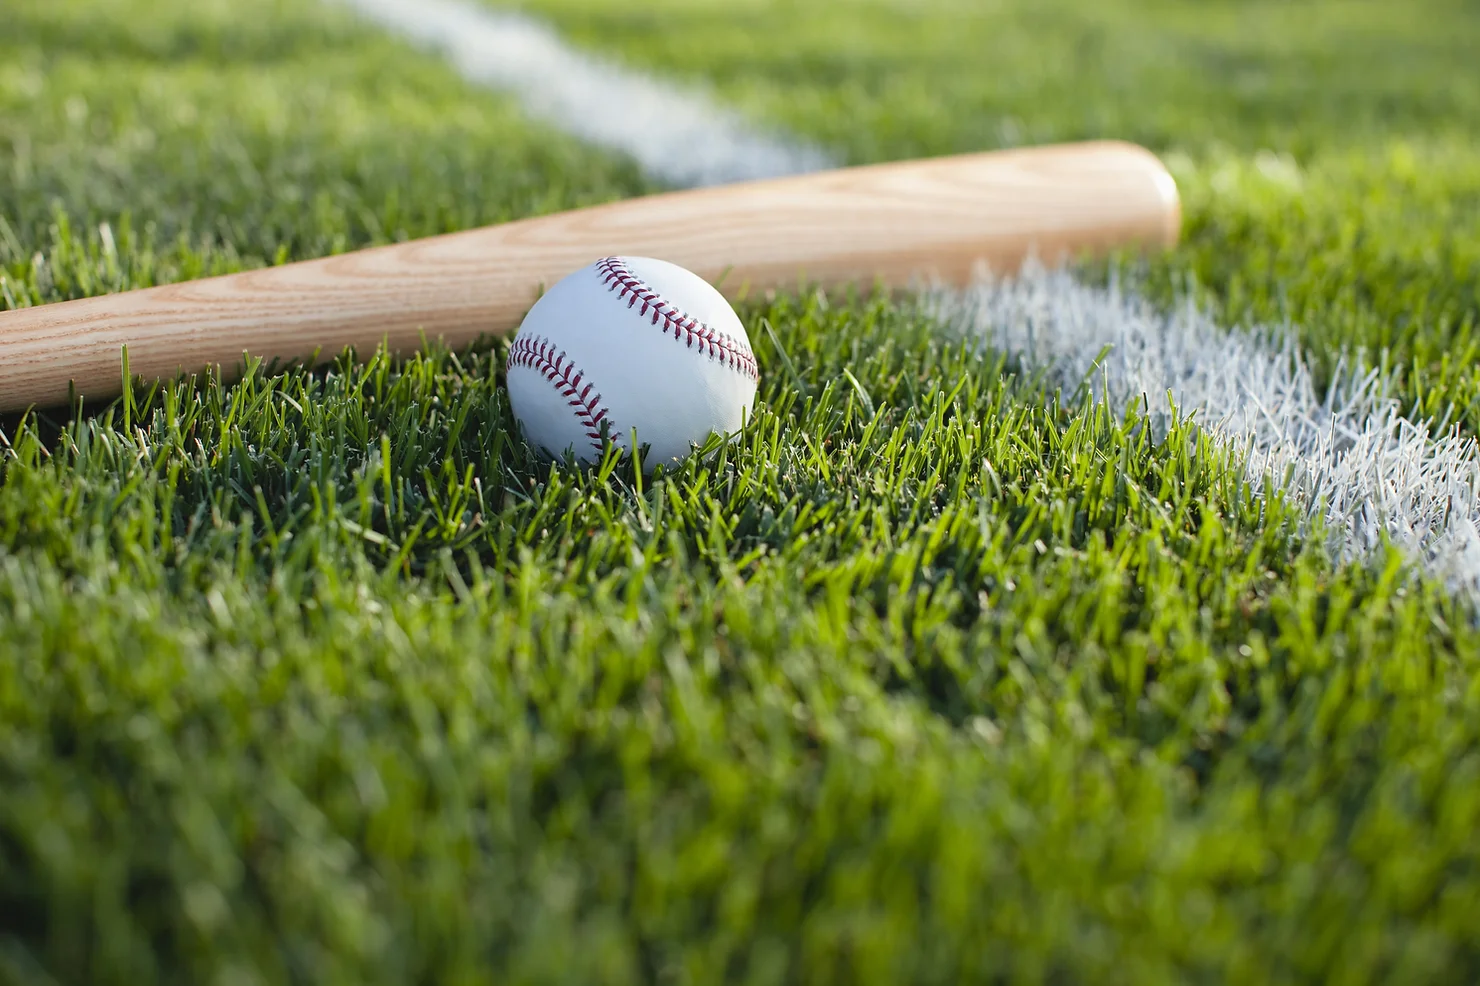 Wooden baseball bat and baseball laying on a baseball field.